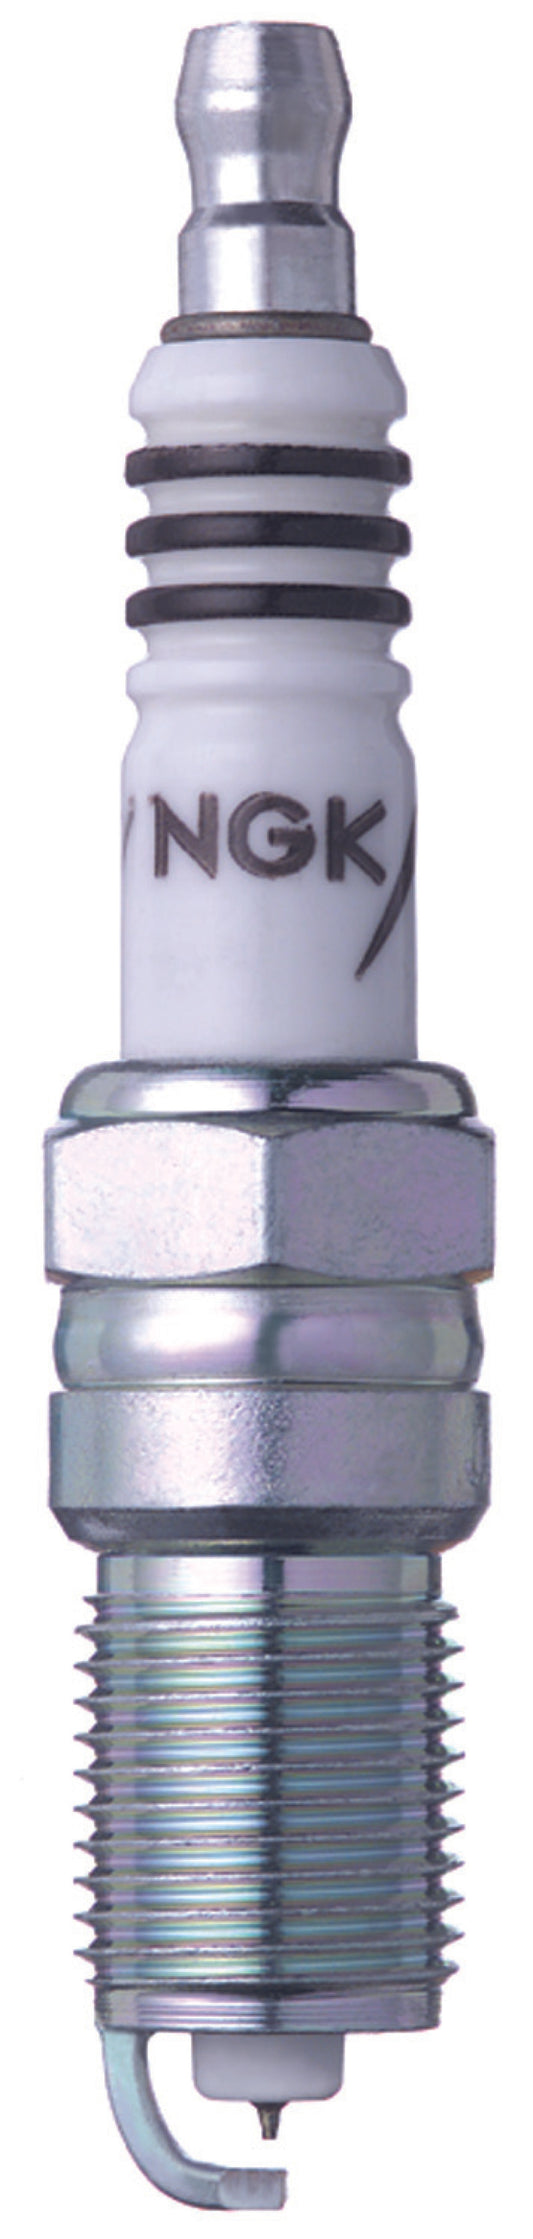 NGK Iridium IX Spark Plug Box of 4 (TR4IX)